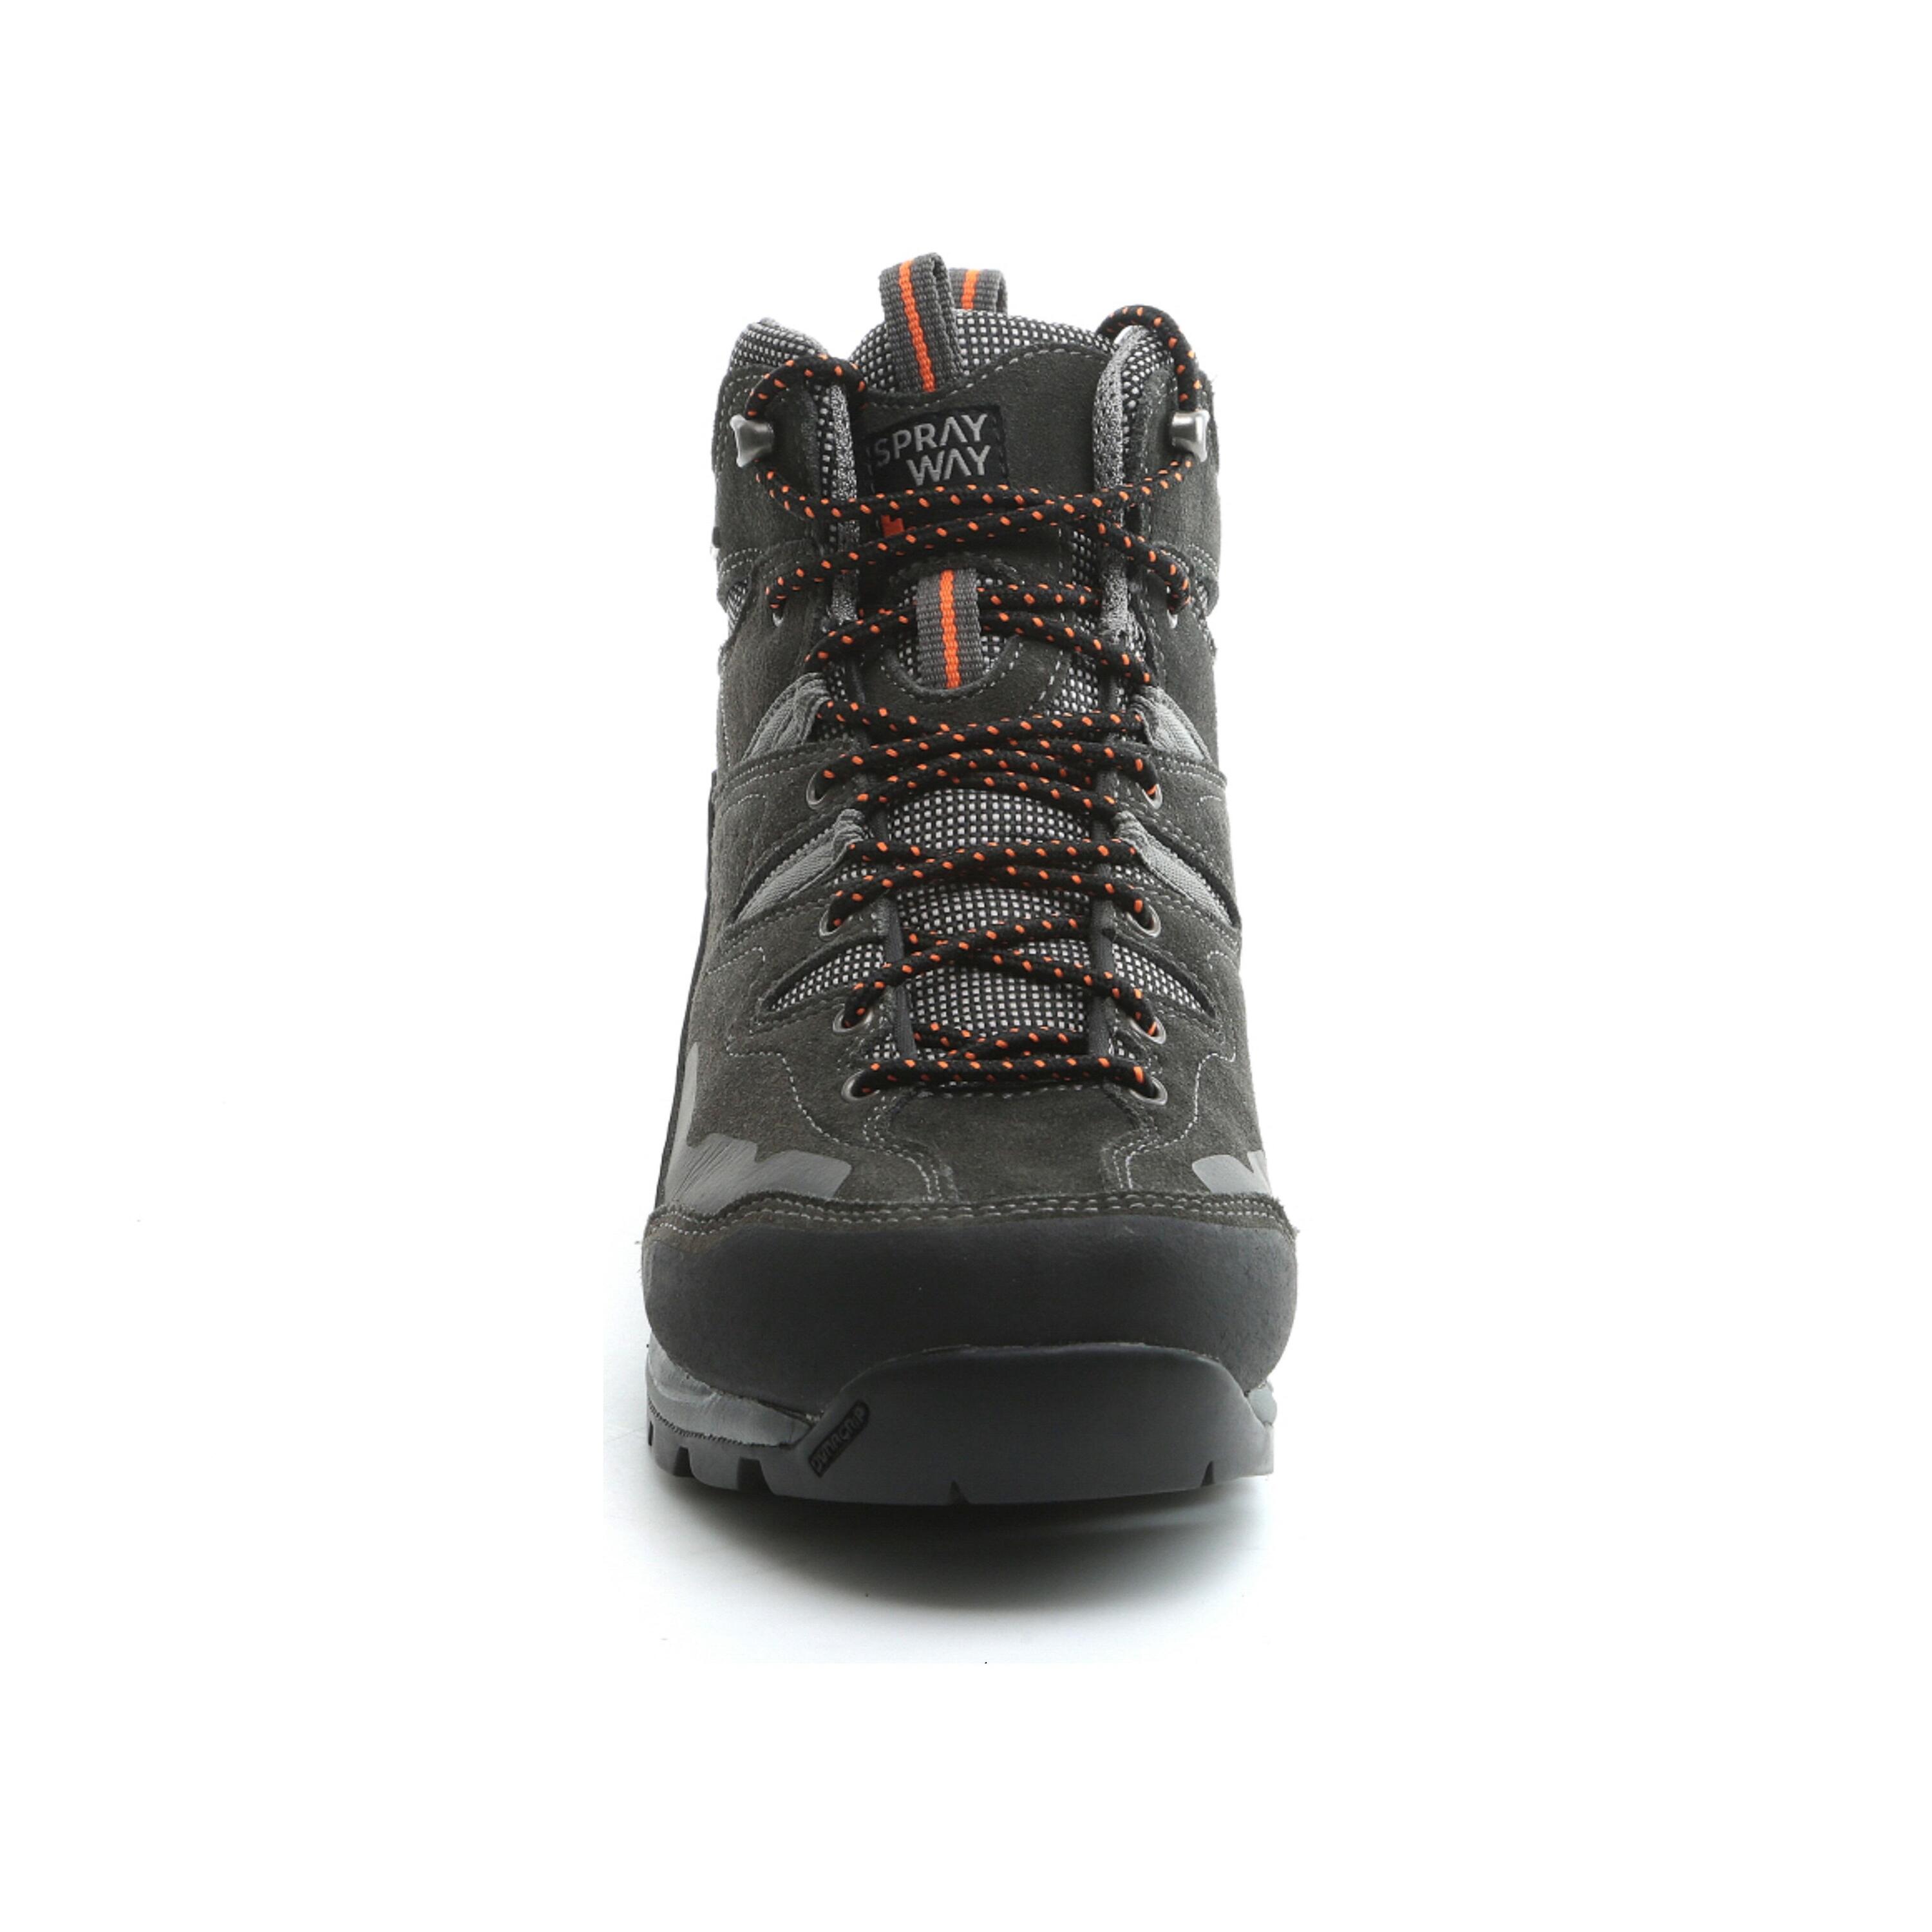 Men's waterproof walking boots - Sprayway Oxna mid - Charcoal 3/5